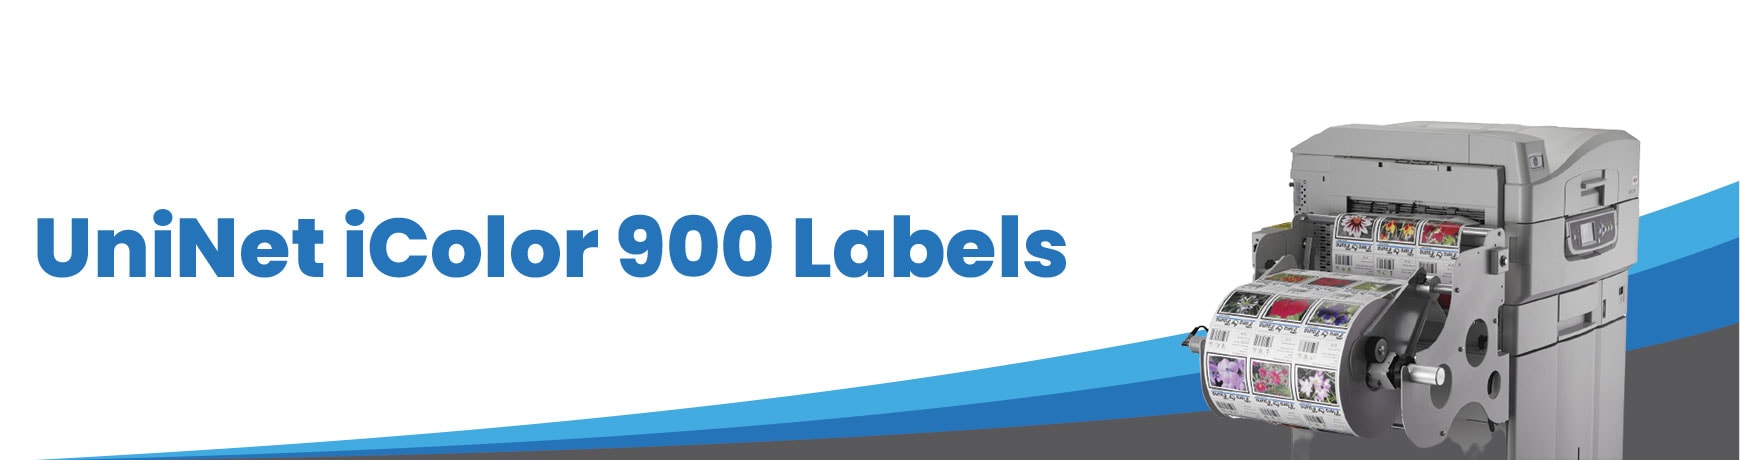 UniNet iColor 900 Labels